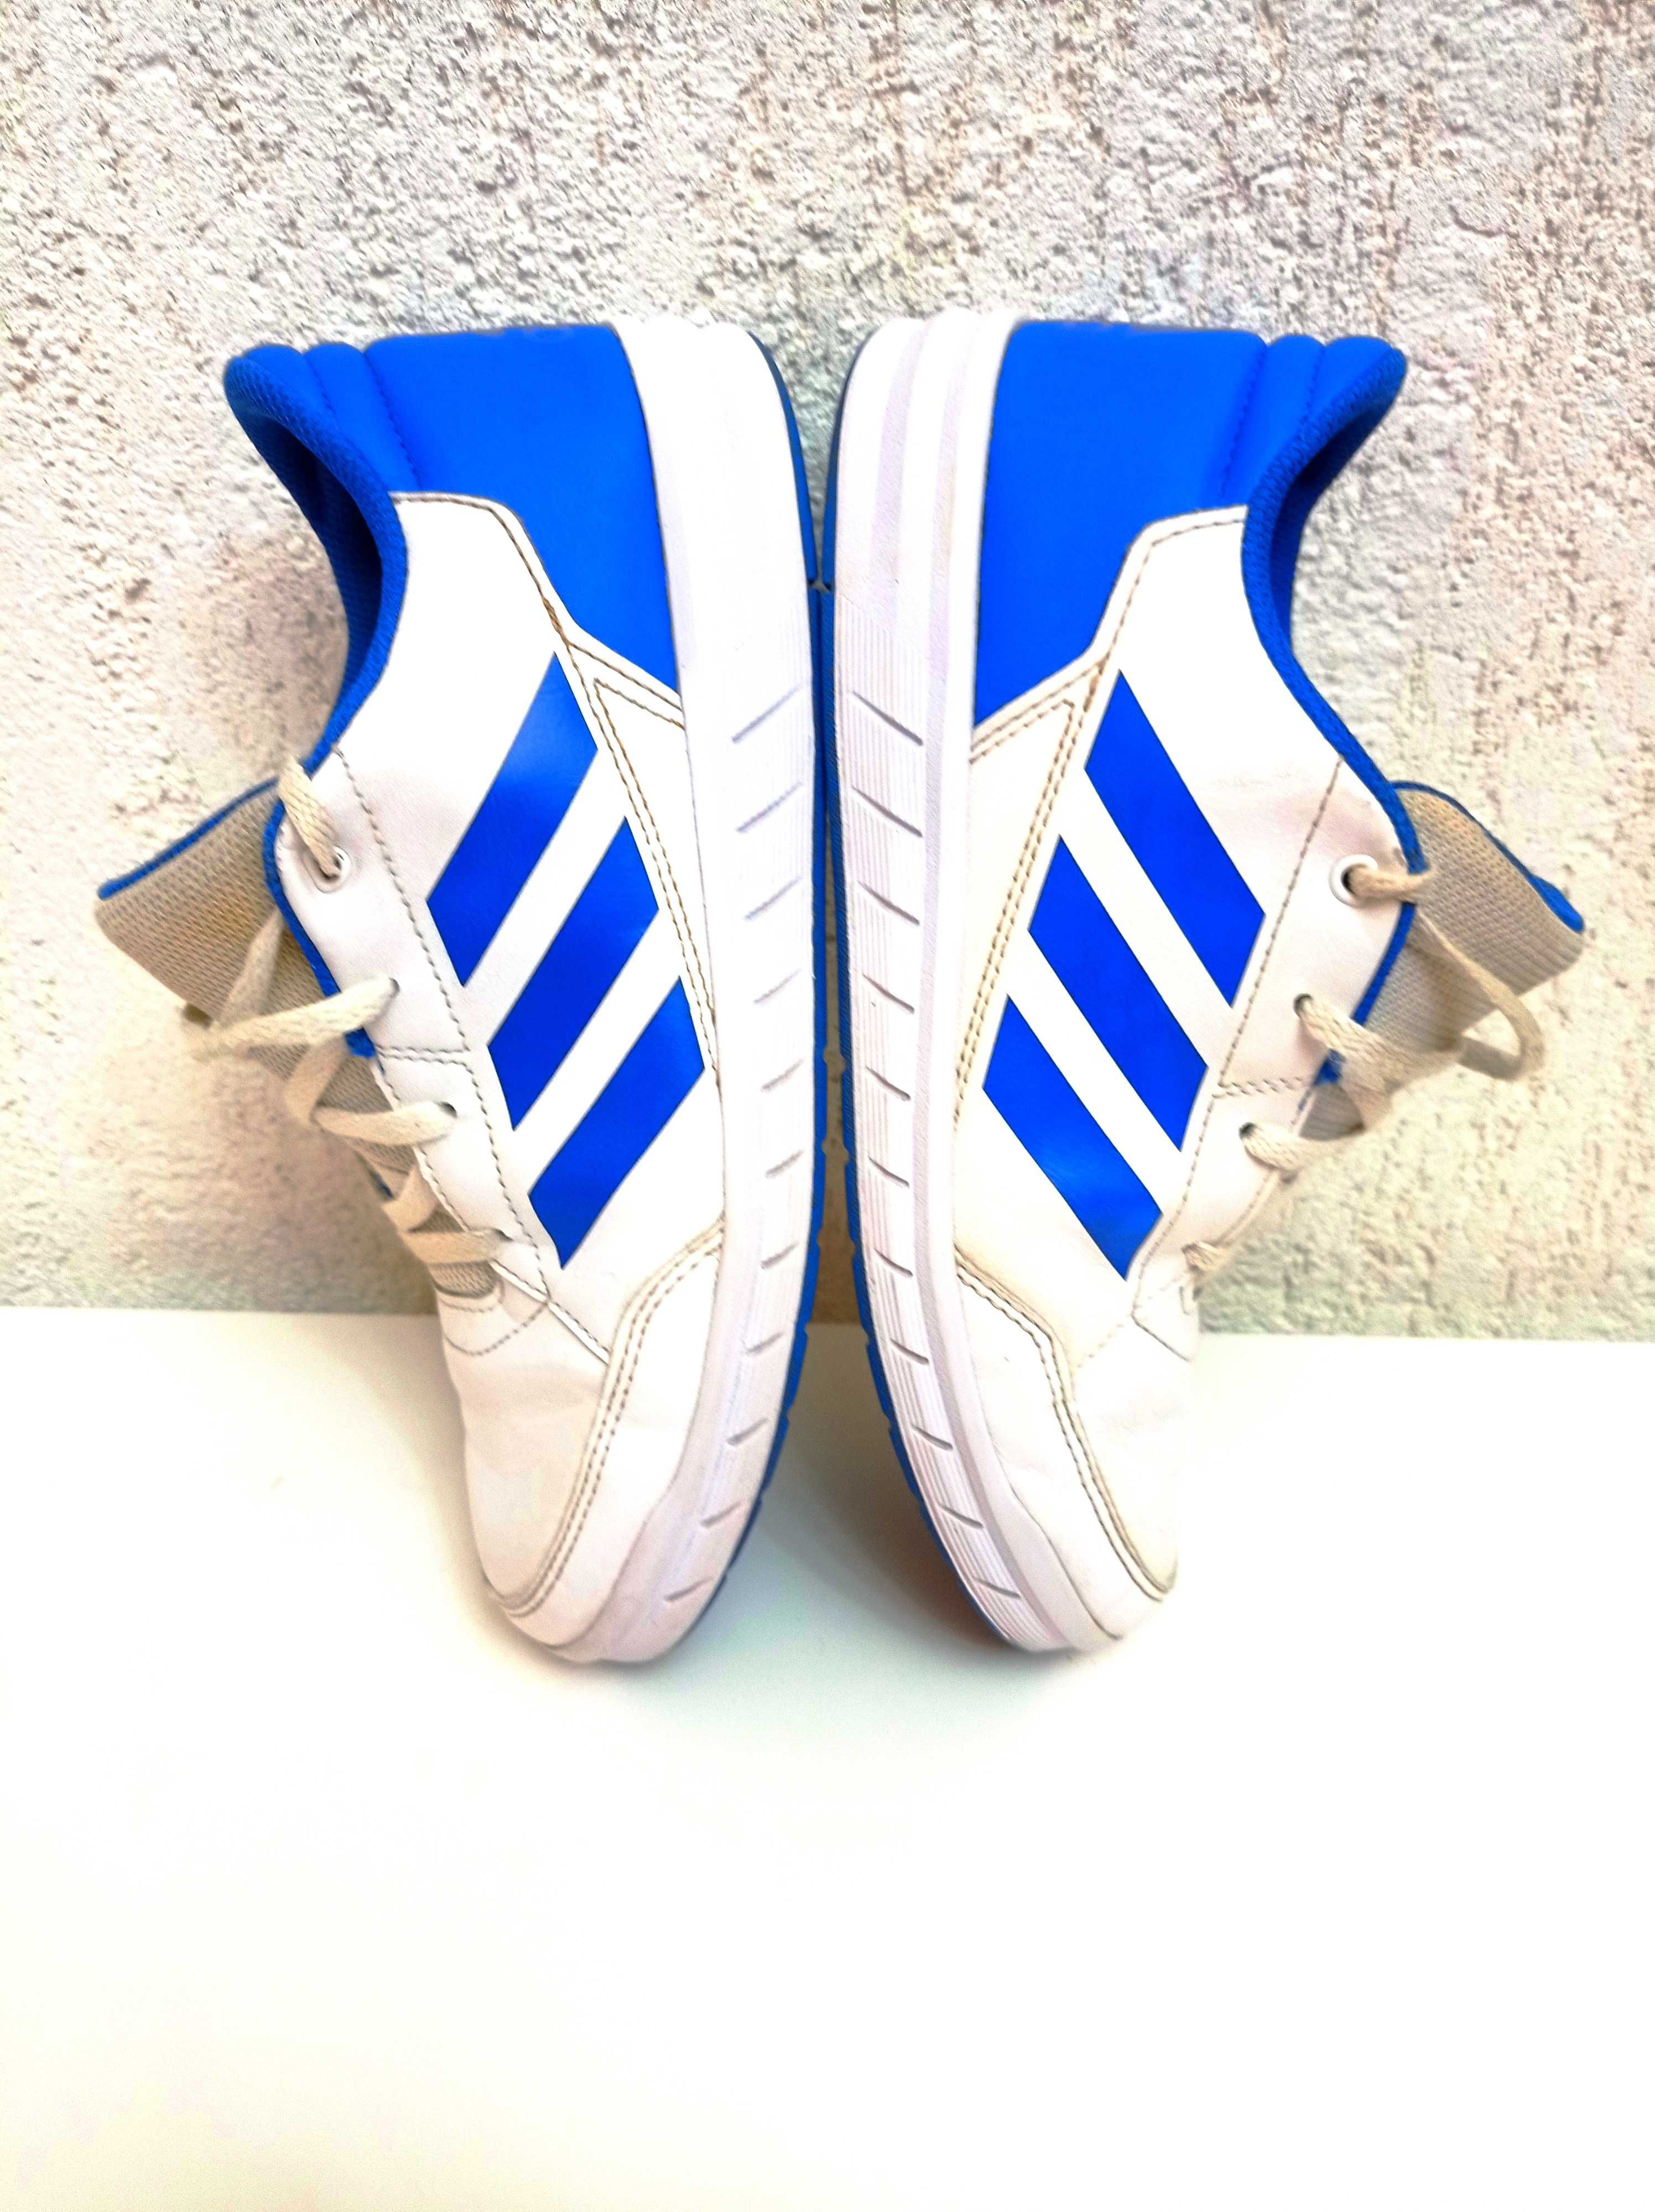 ADIDAS buty Adidasy 37 męskie Sneakersy Tenisówki Sportowe Trampki